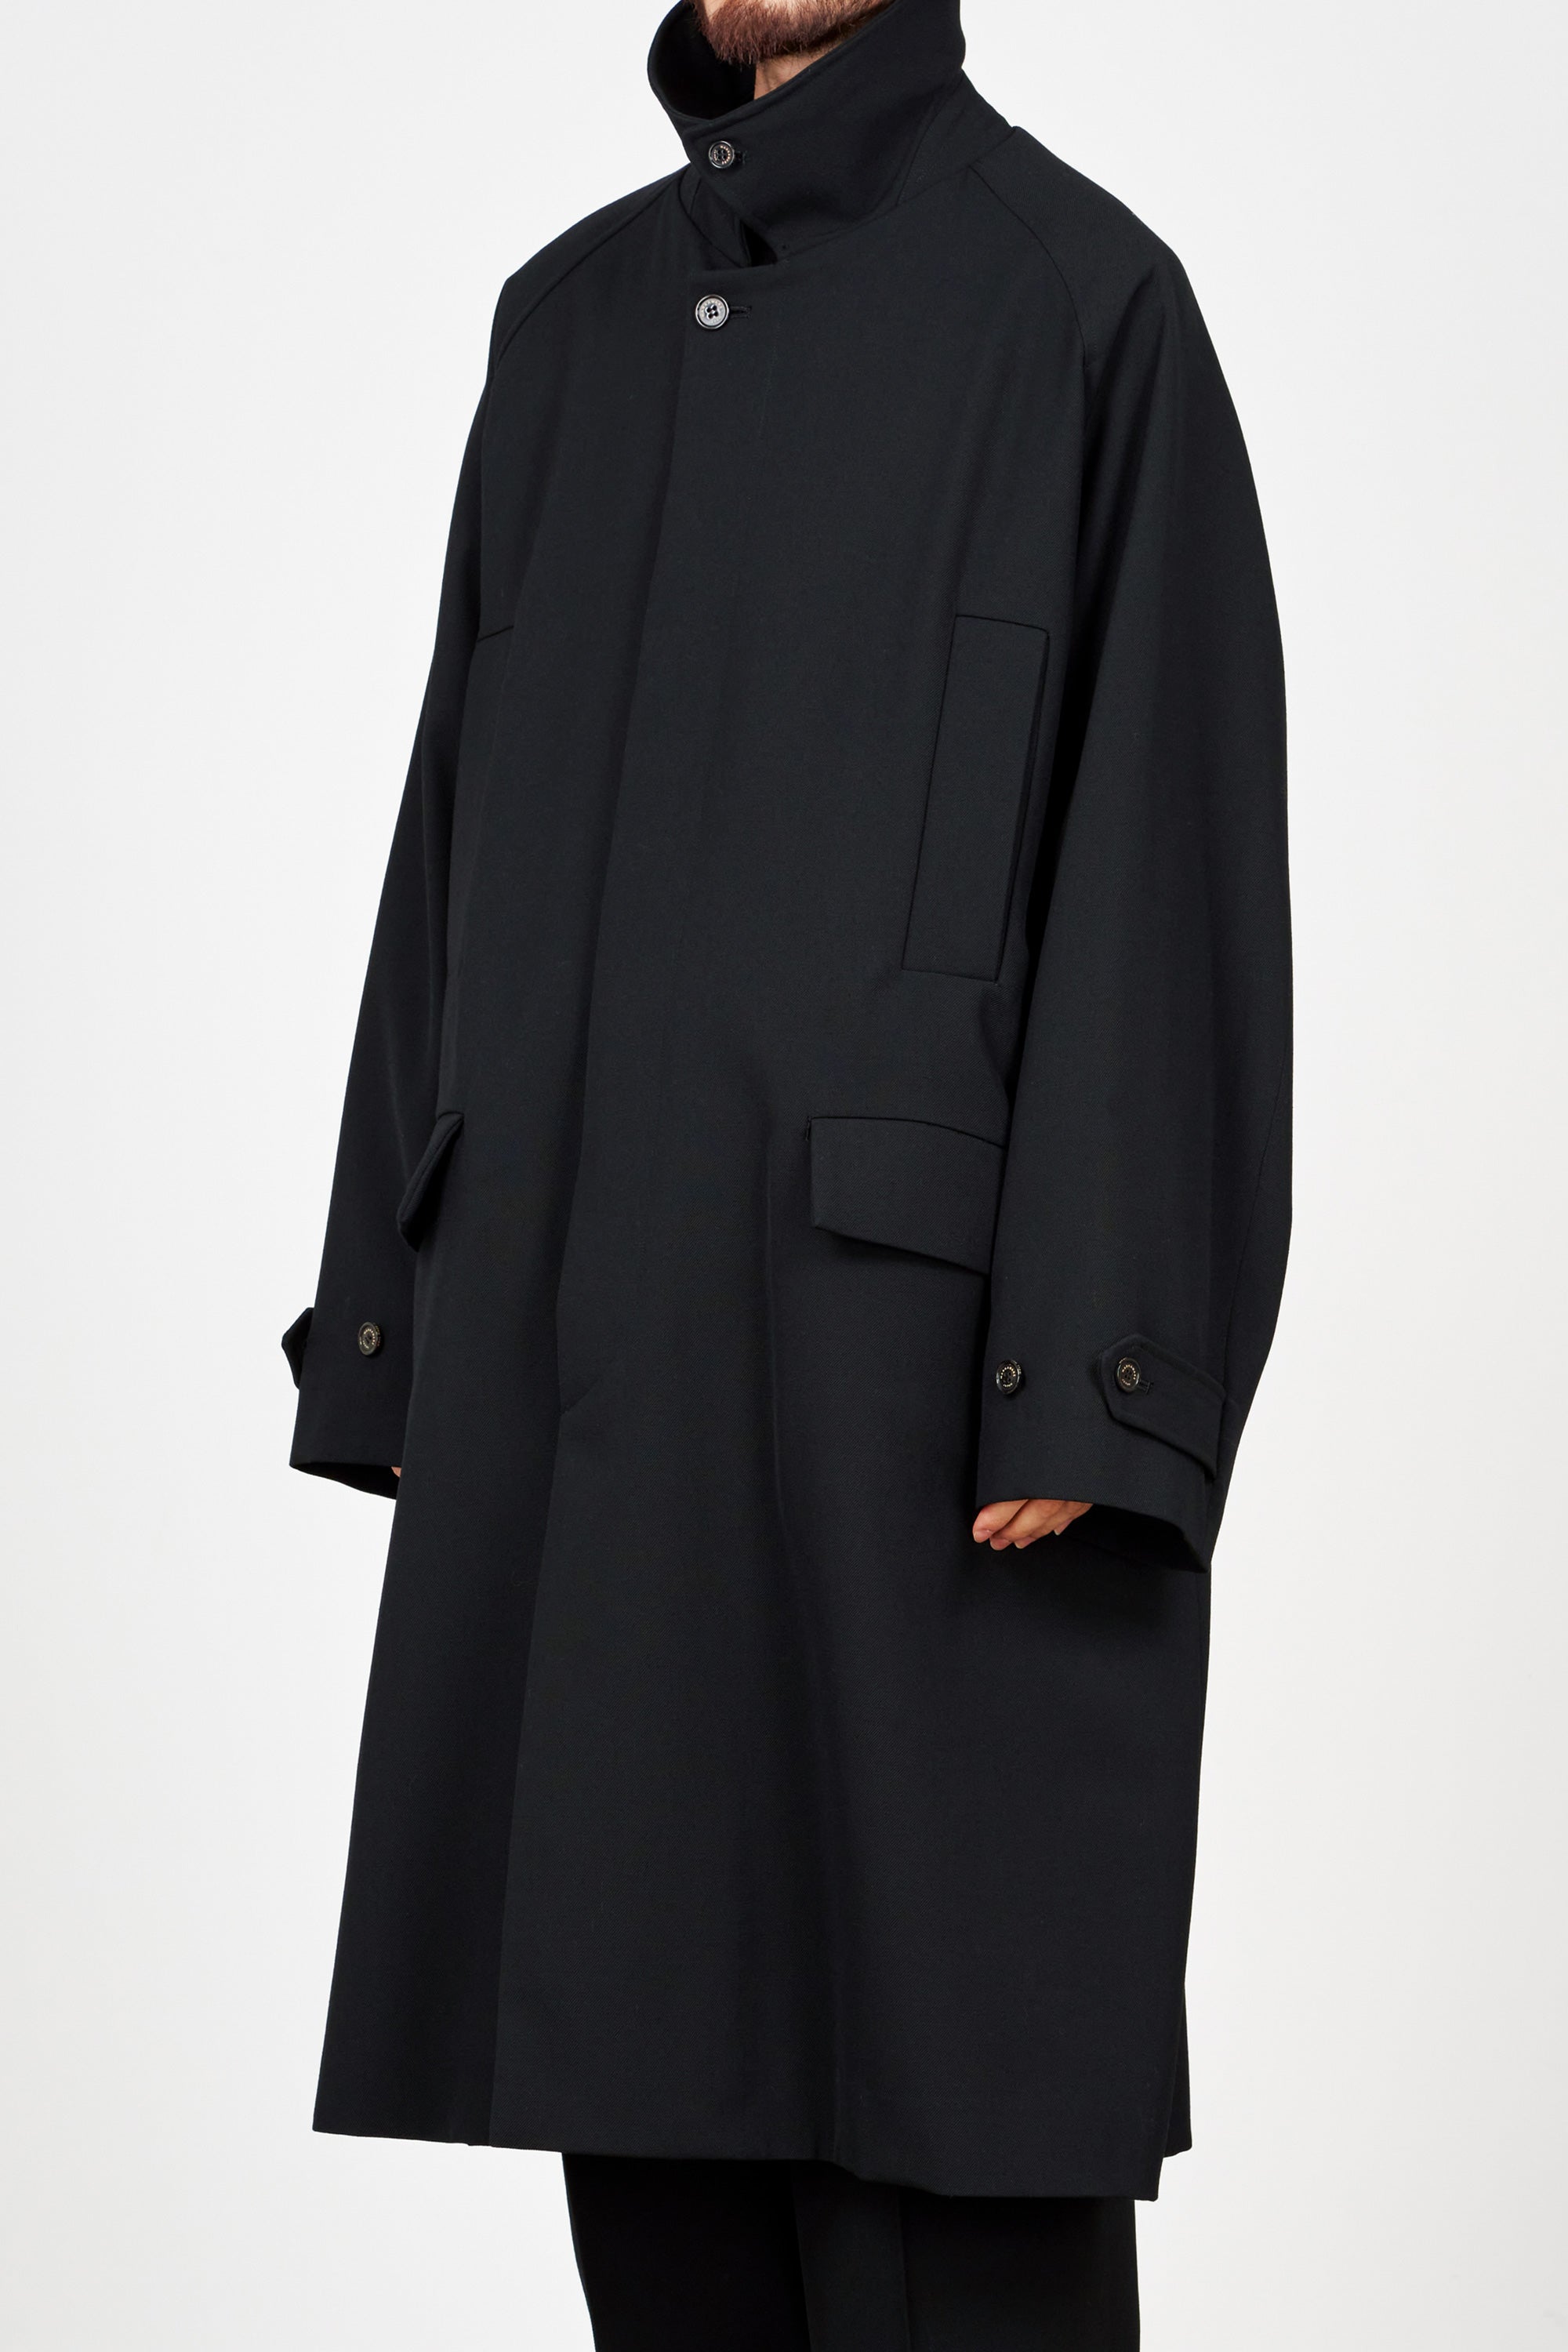 ORGANIC WOOL SURVIVAL CLOTH BIG MAC COAT, Black